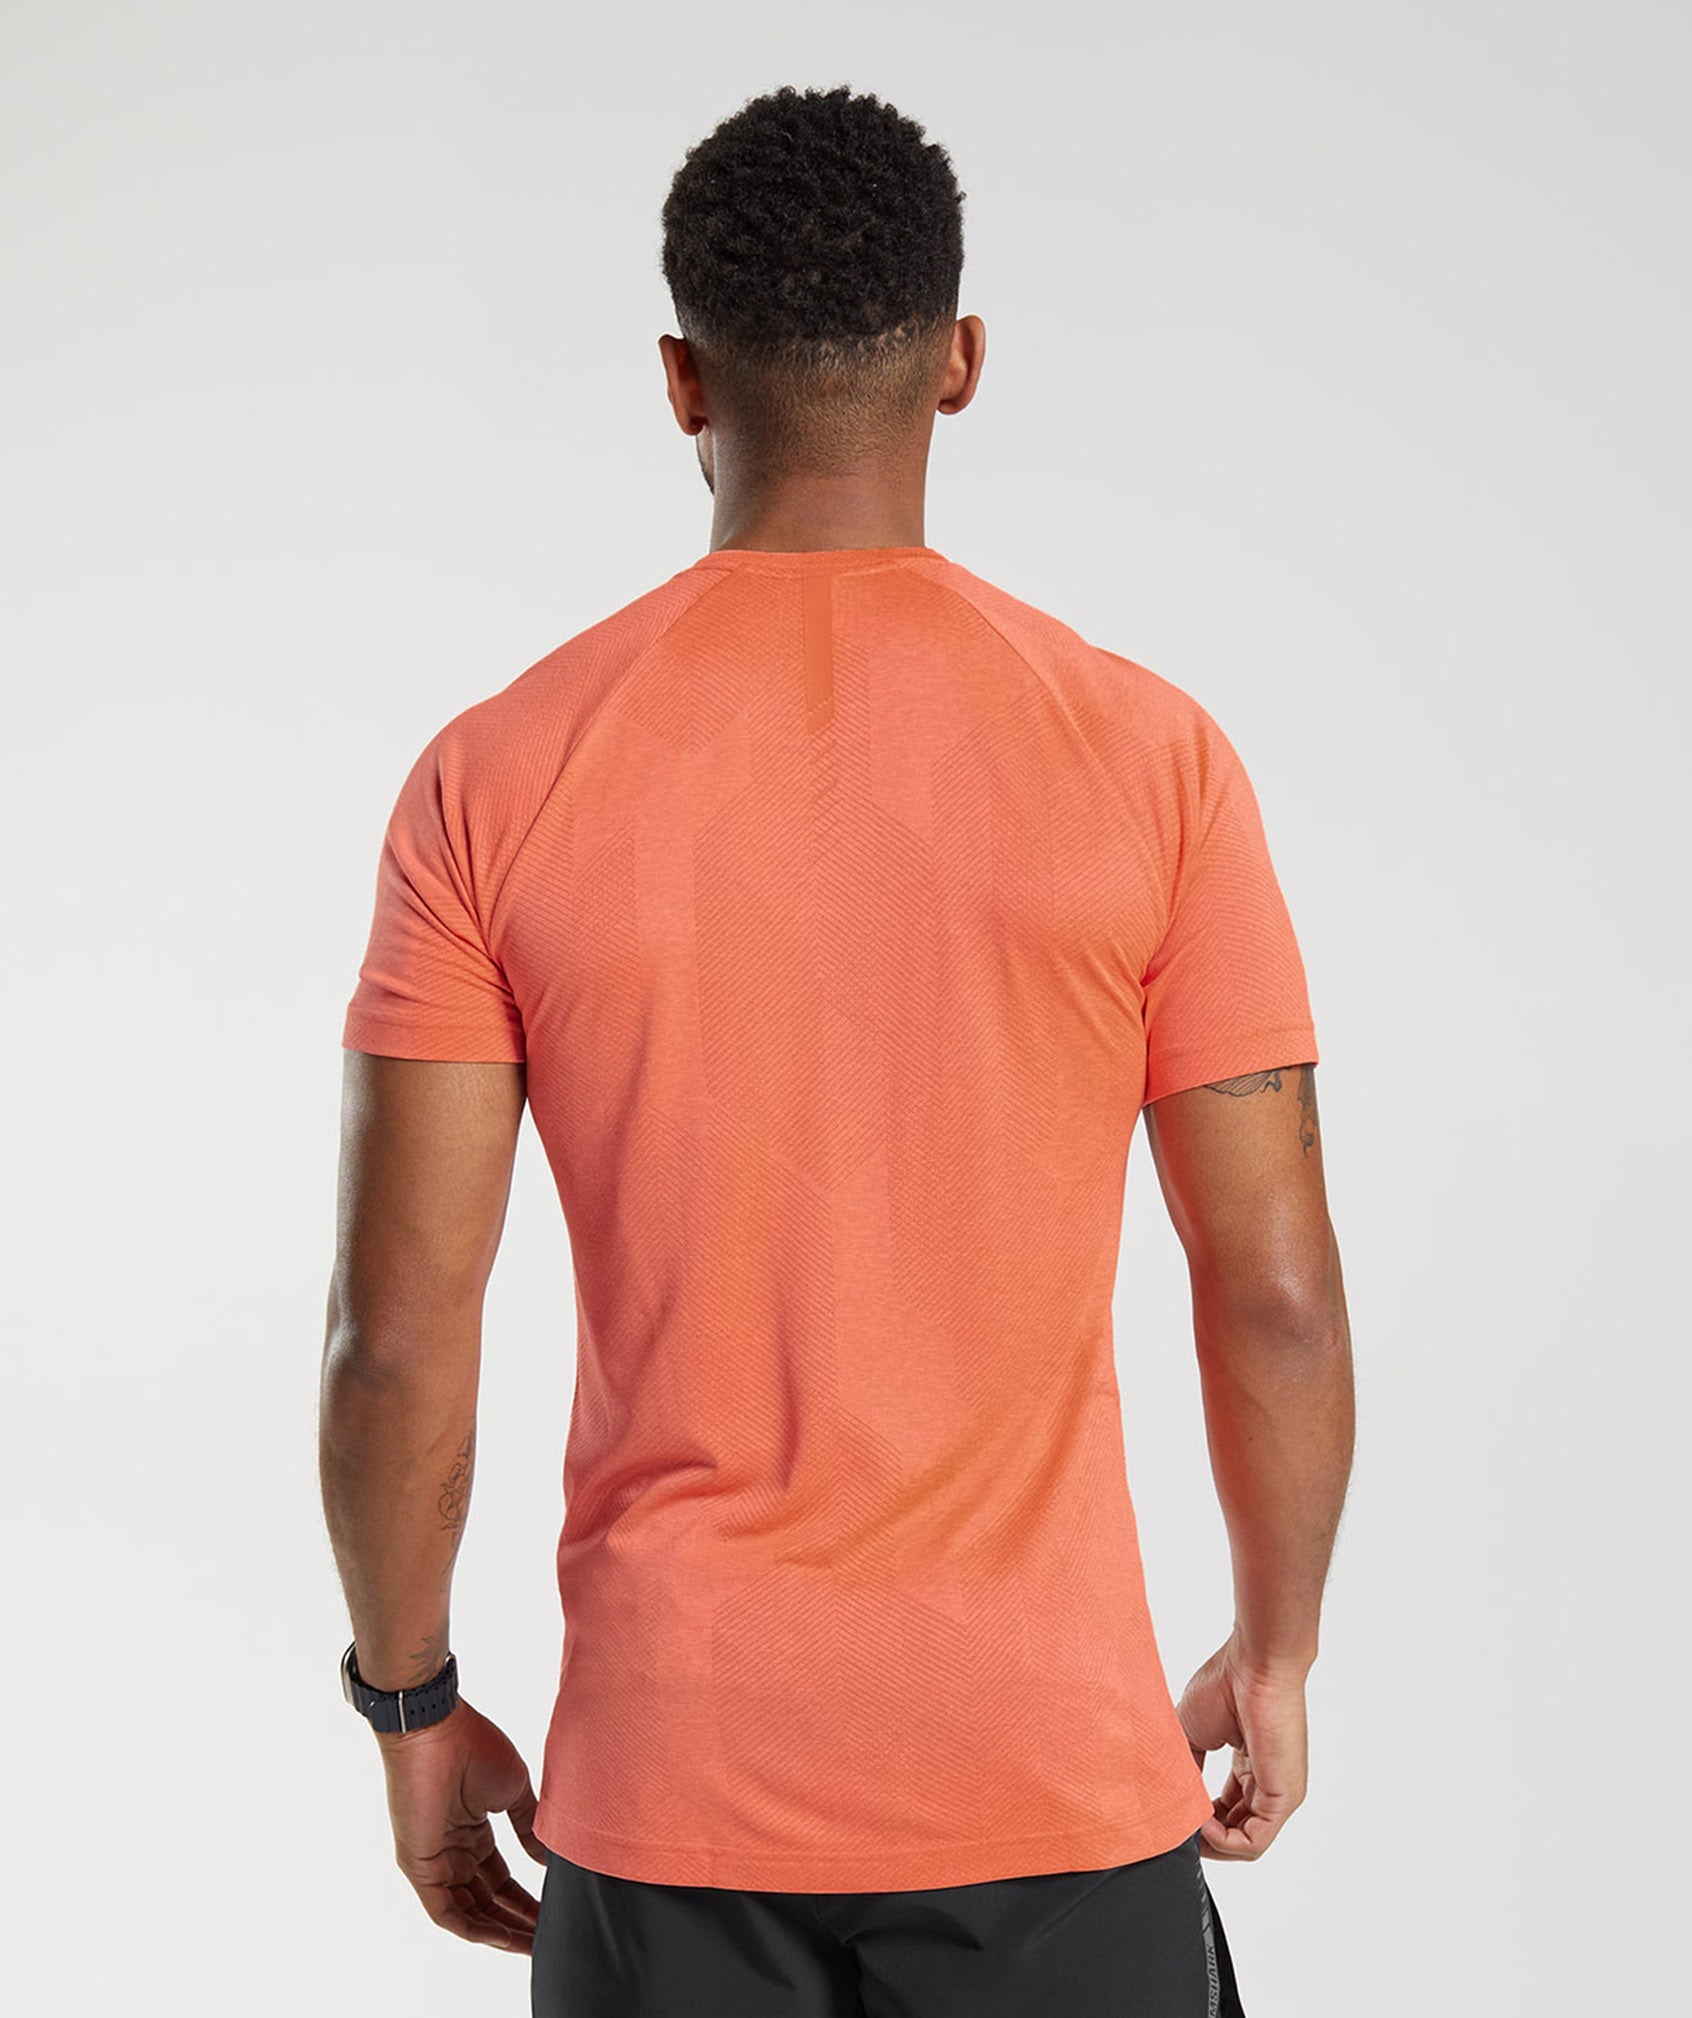 Apex T-Shirt in Solstice Orange/Fluo Peach - view 2